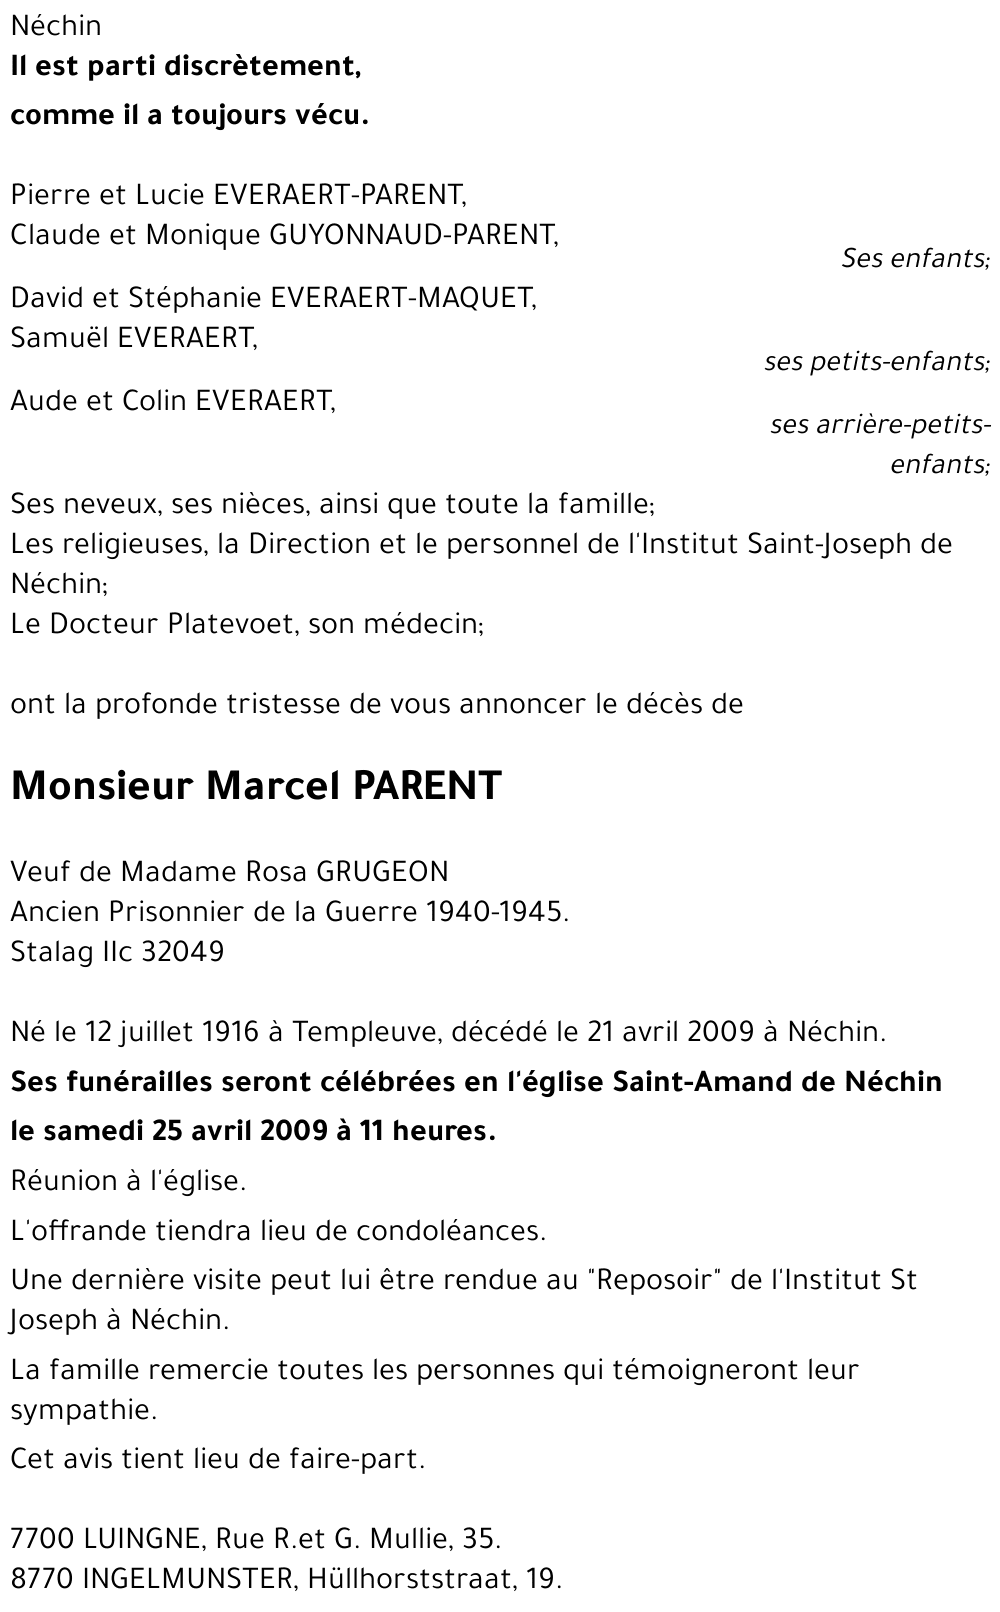 Marcel PARENT († 21/04/2009) | Inmemoriam